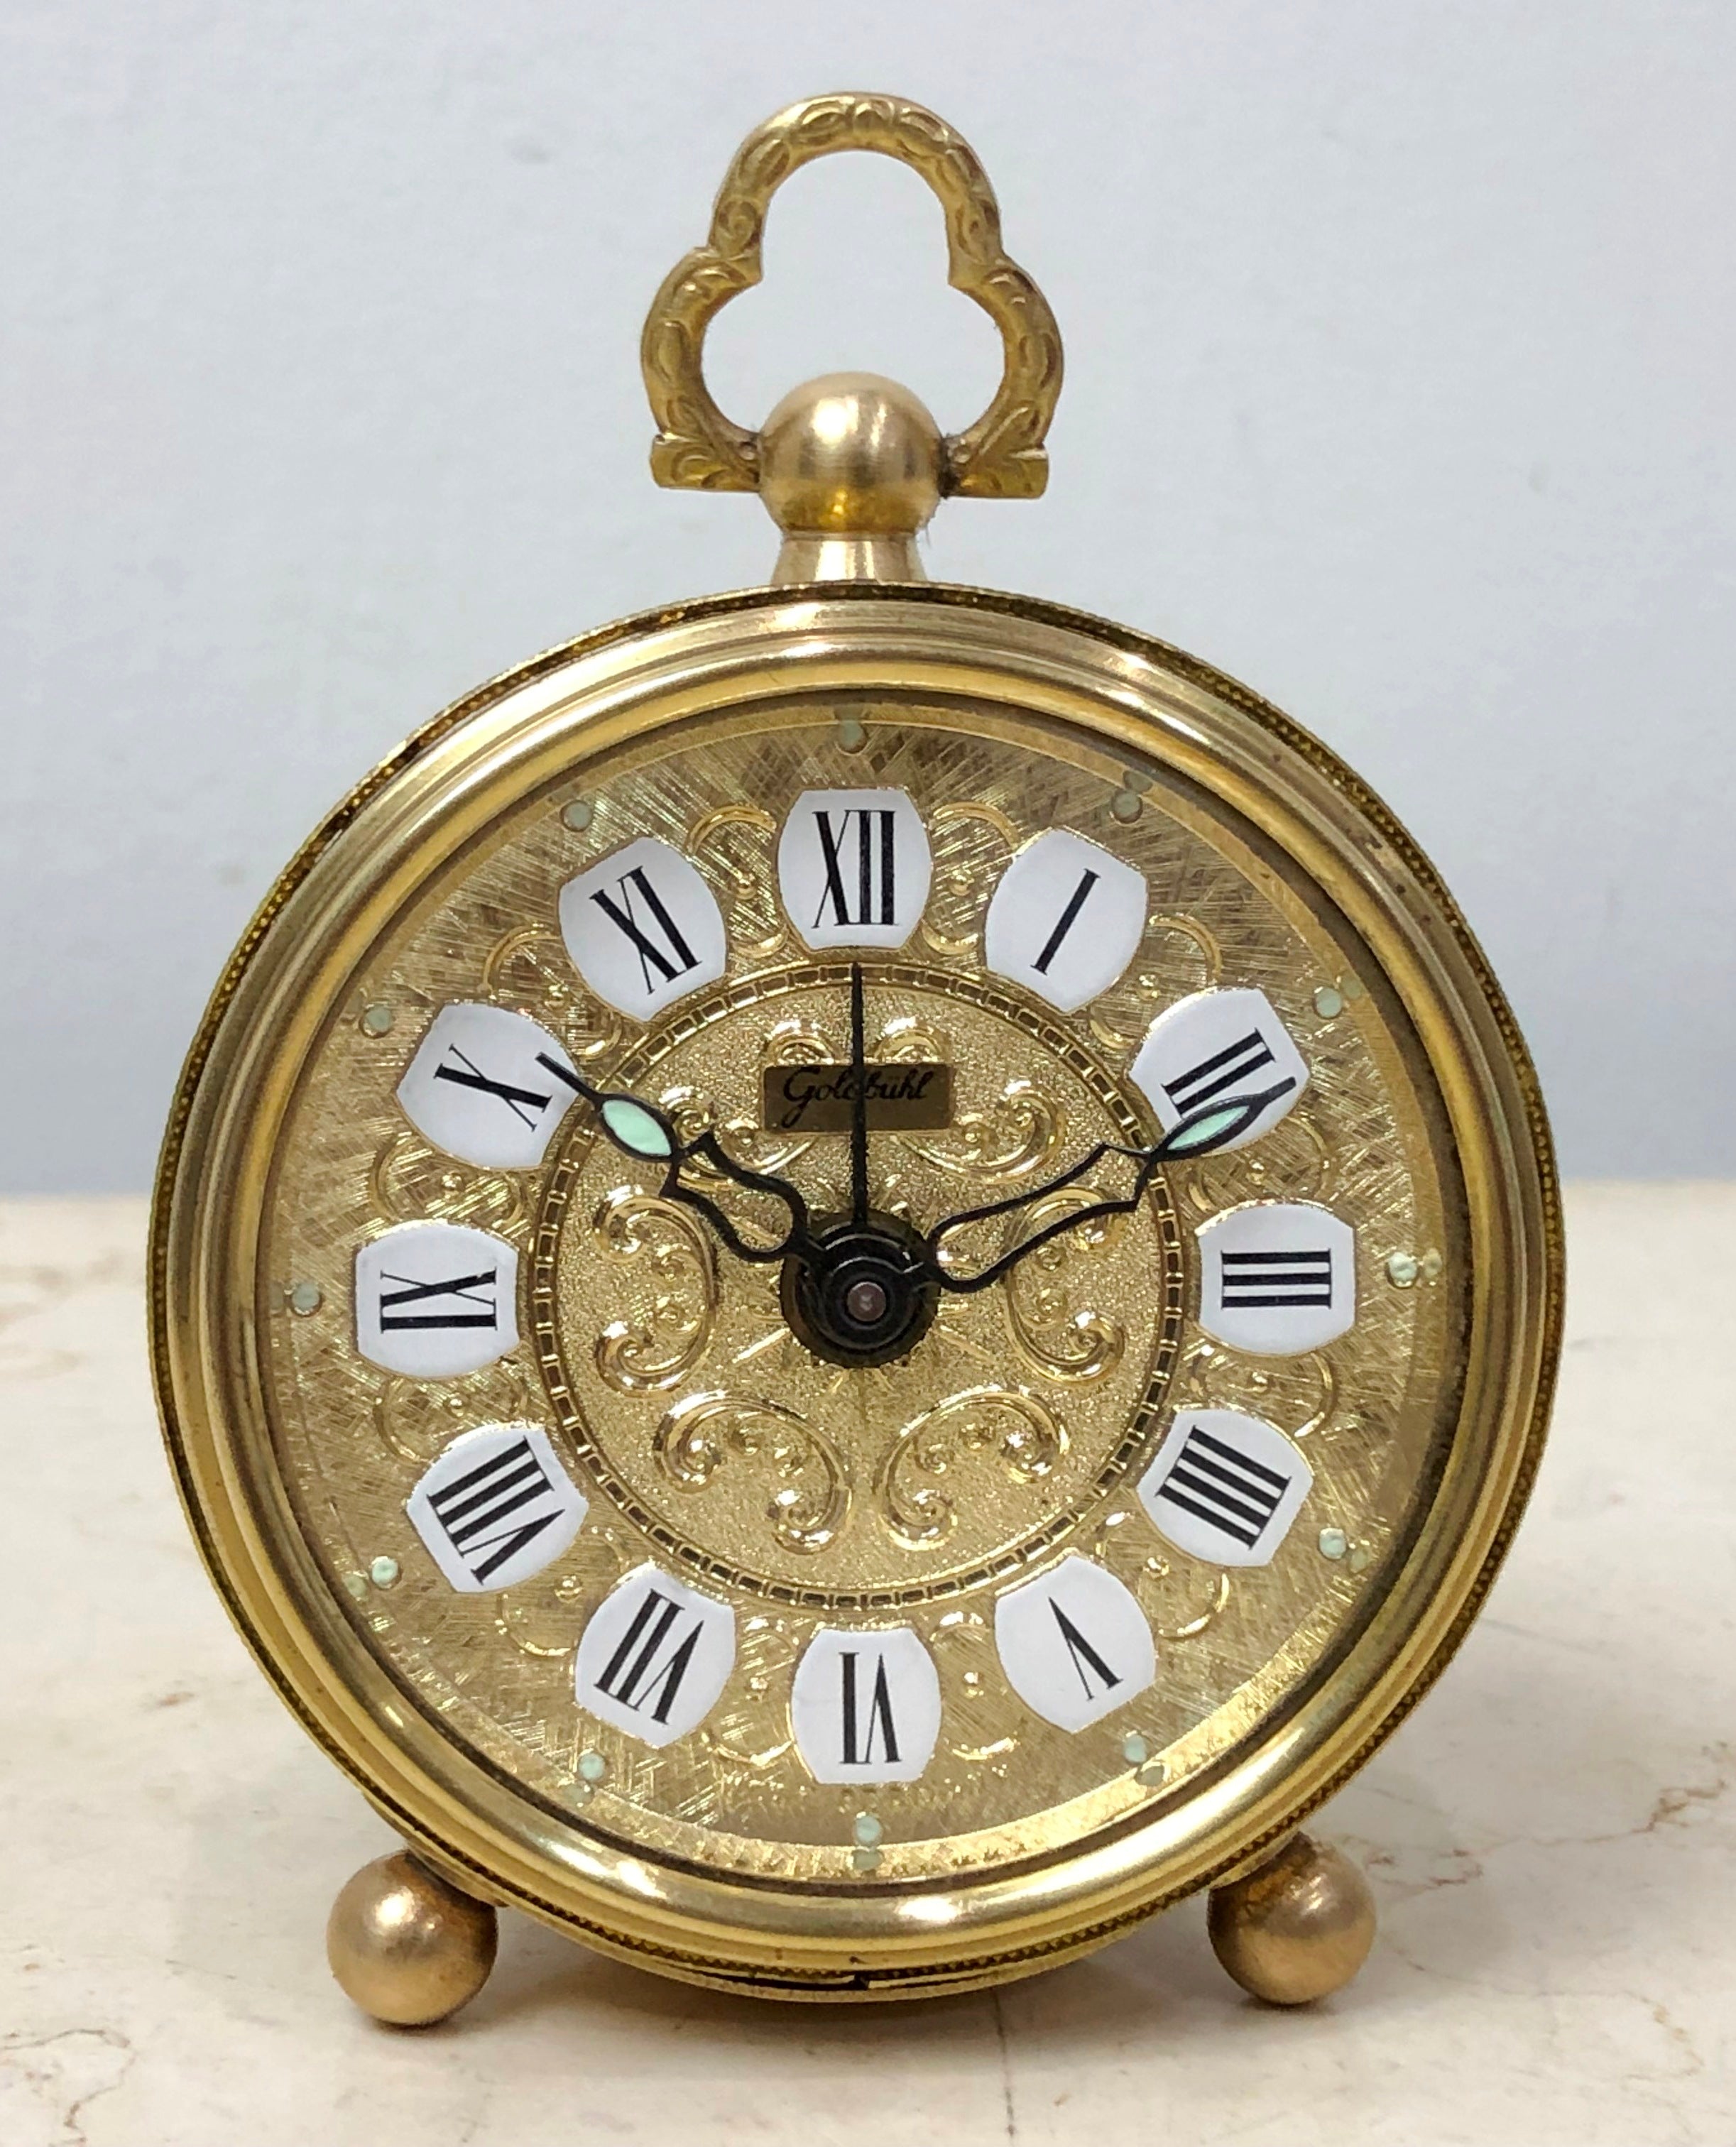 Vintage Goldbuhl German Alarm Bedside Desk Clock | eXibit collection